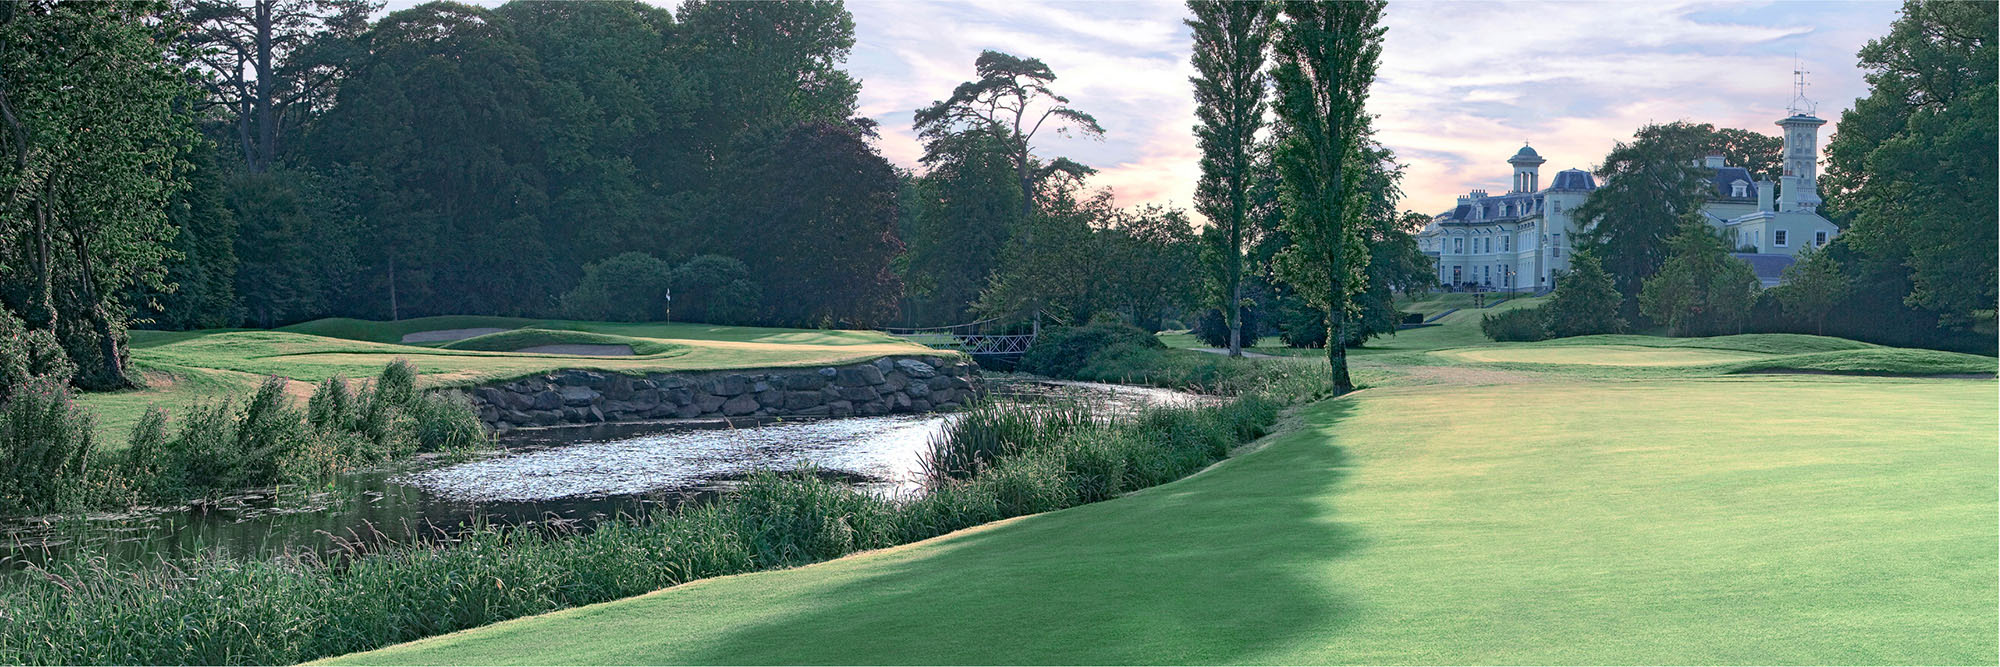 Golf Course Image - K Club No. 7